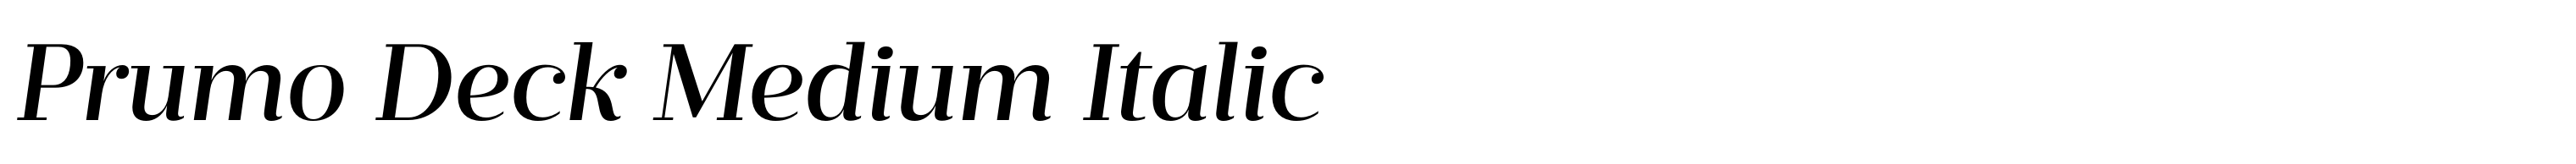 Prumo Deck Medium Italic